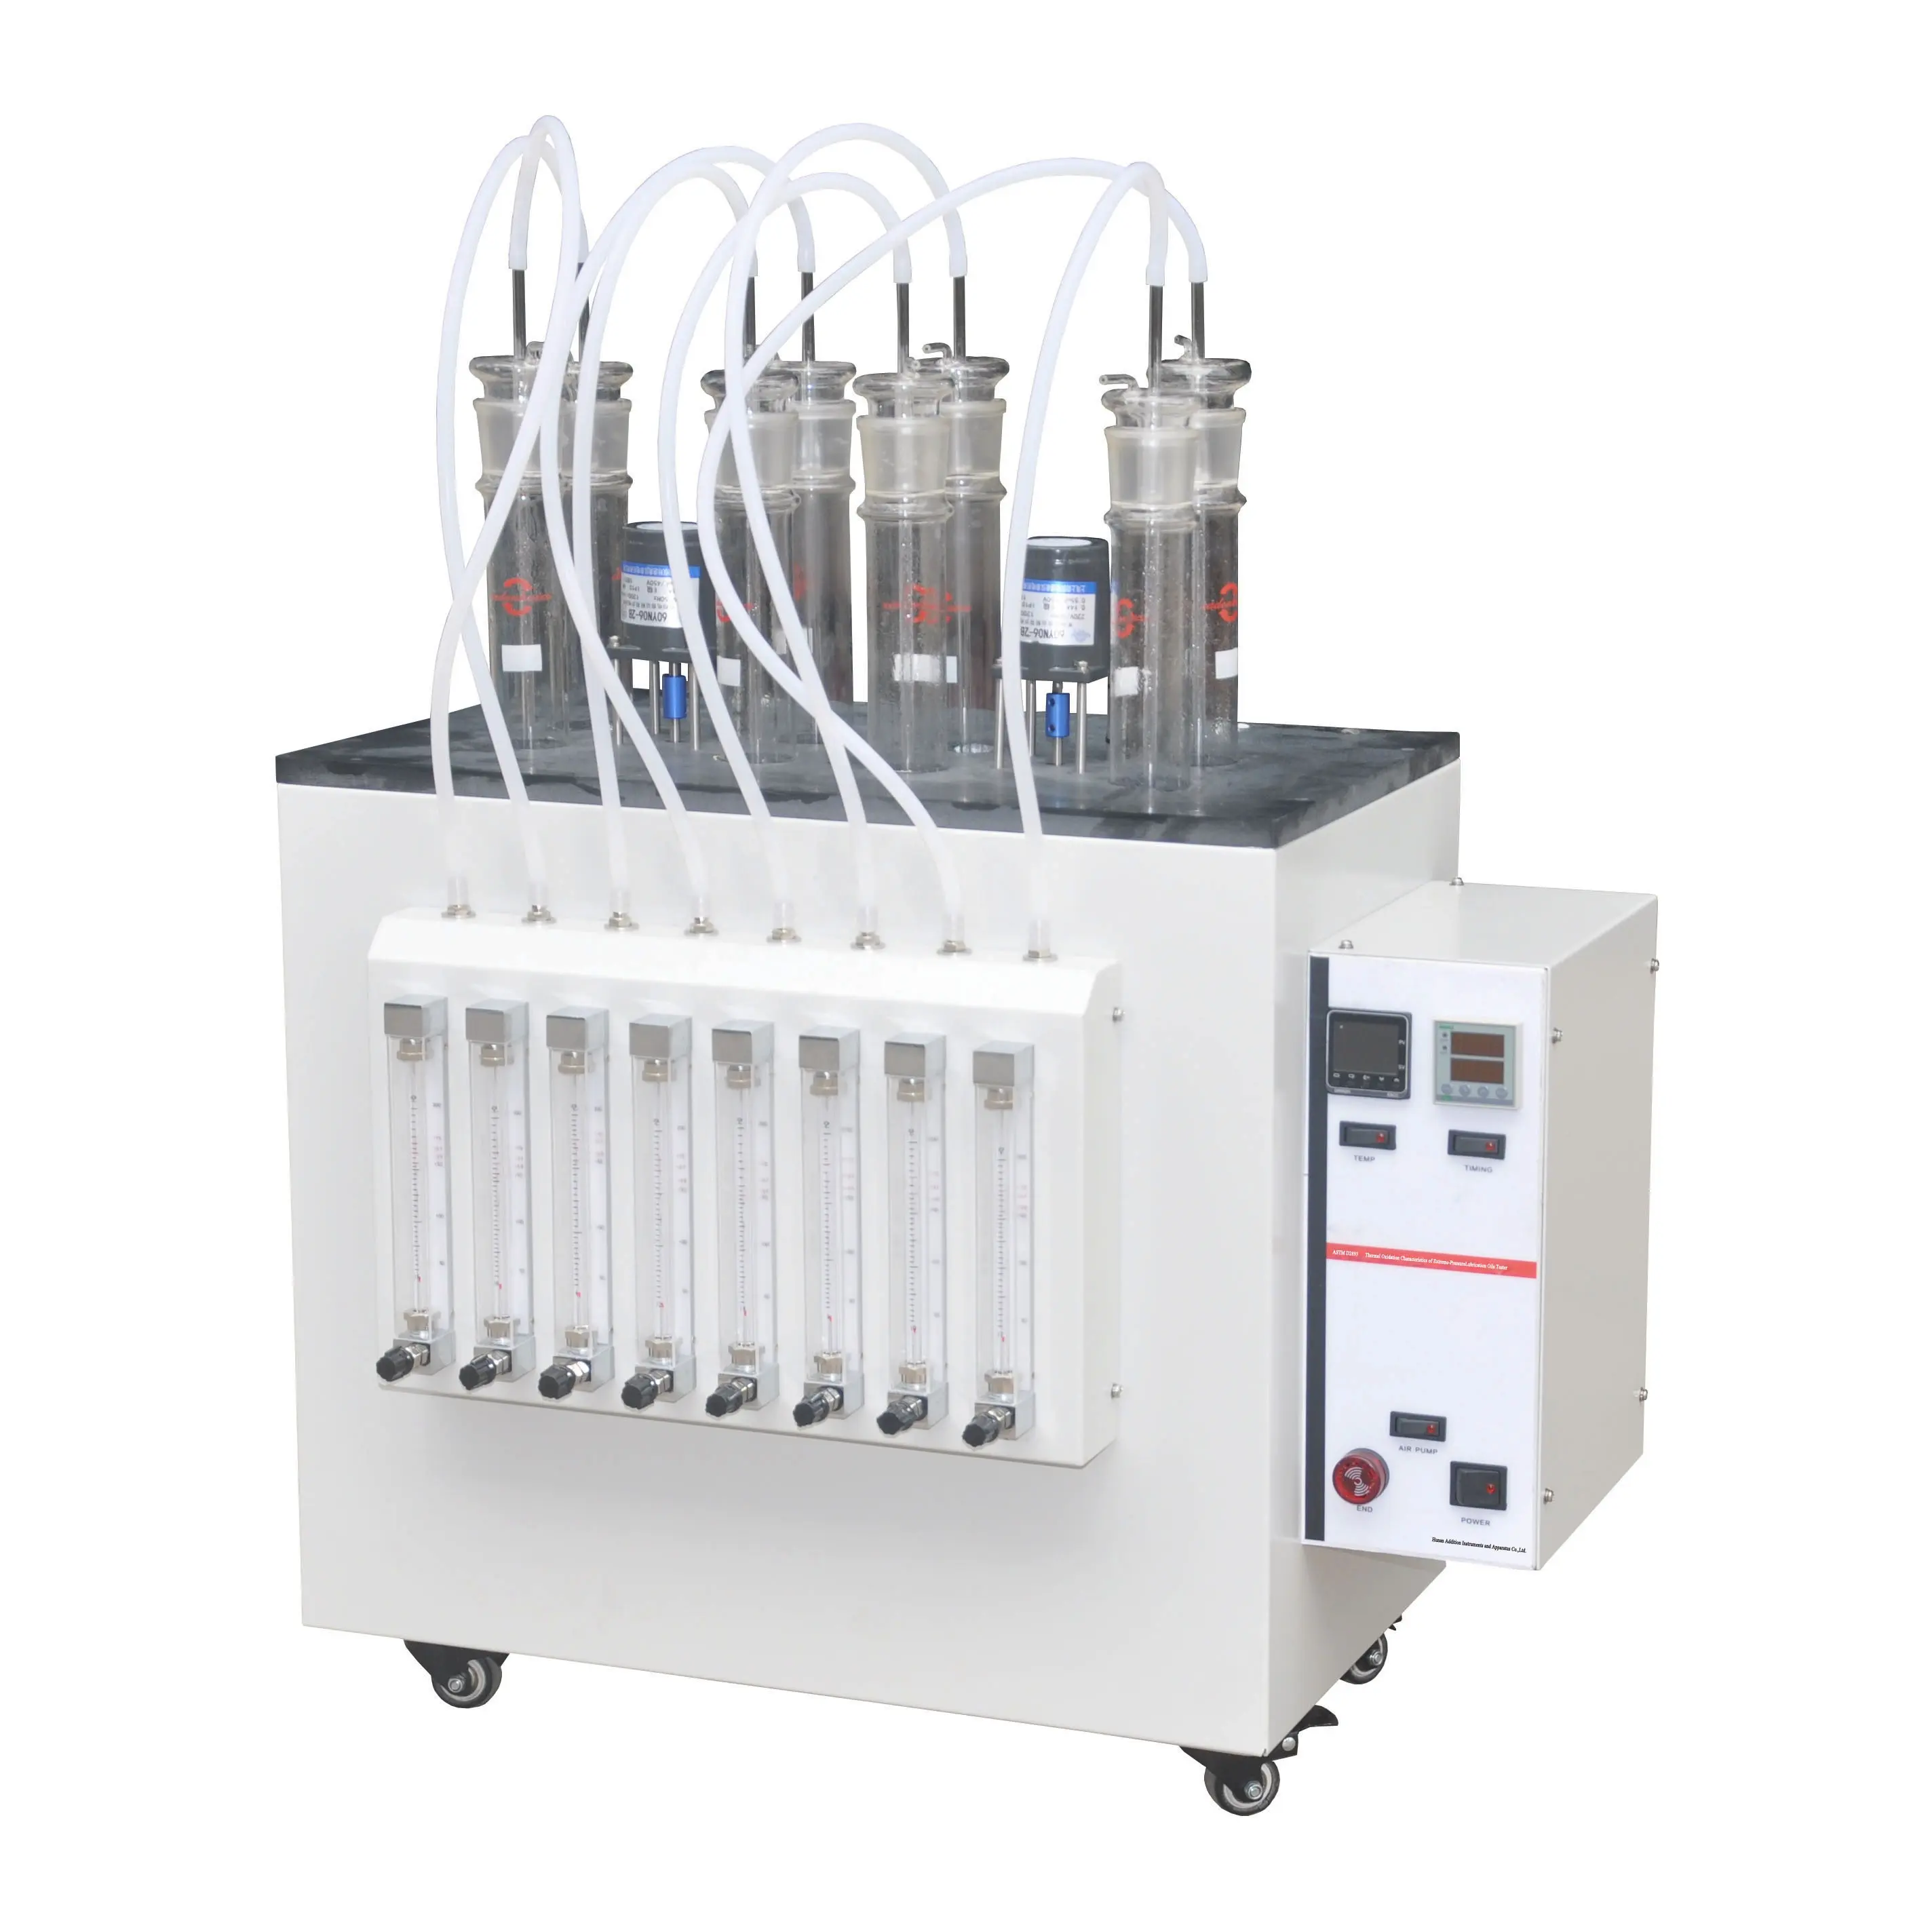 Aşırı basınç yağlama yağları test cihazı aşırı basınç analizörünün ASTM D2893 termal oksidasyon özellikleri